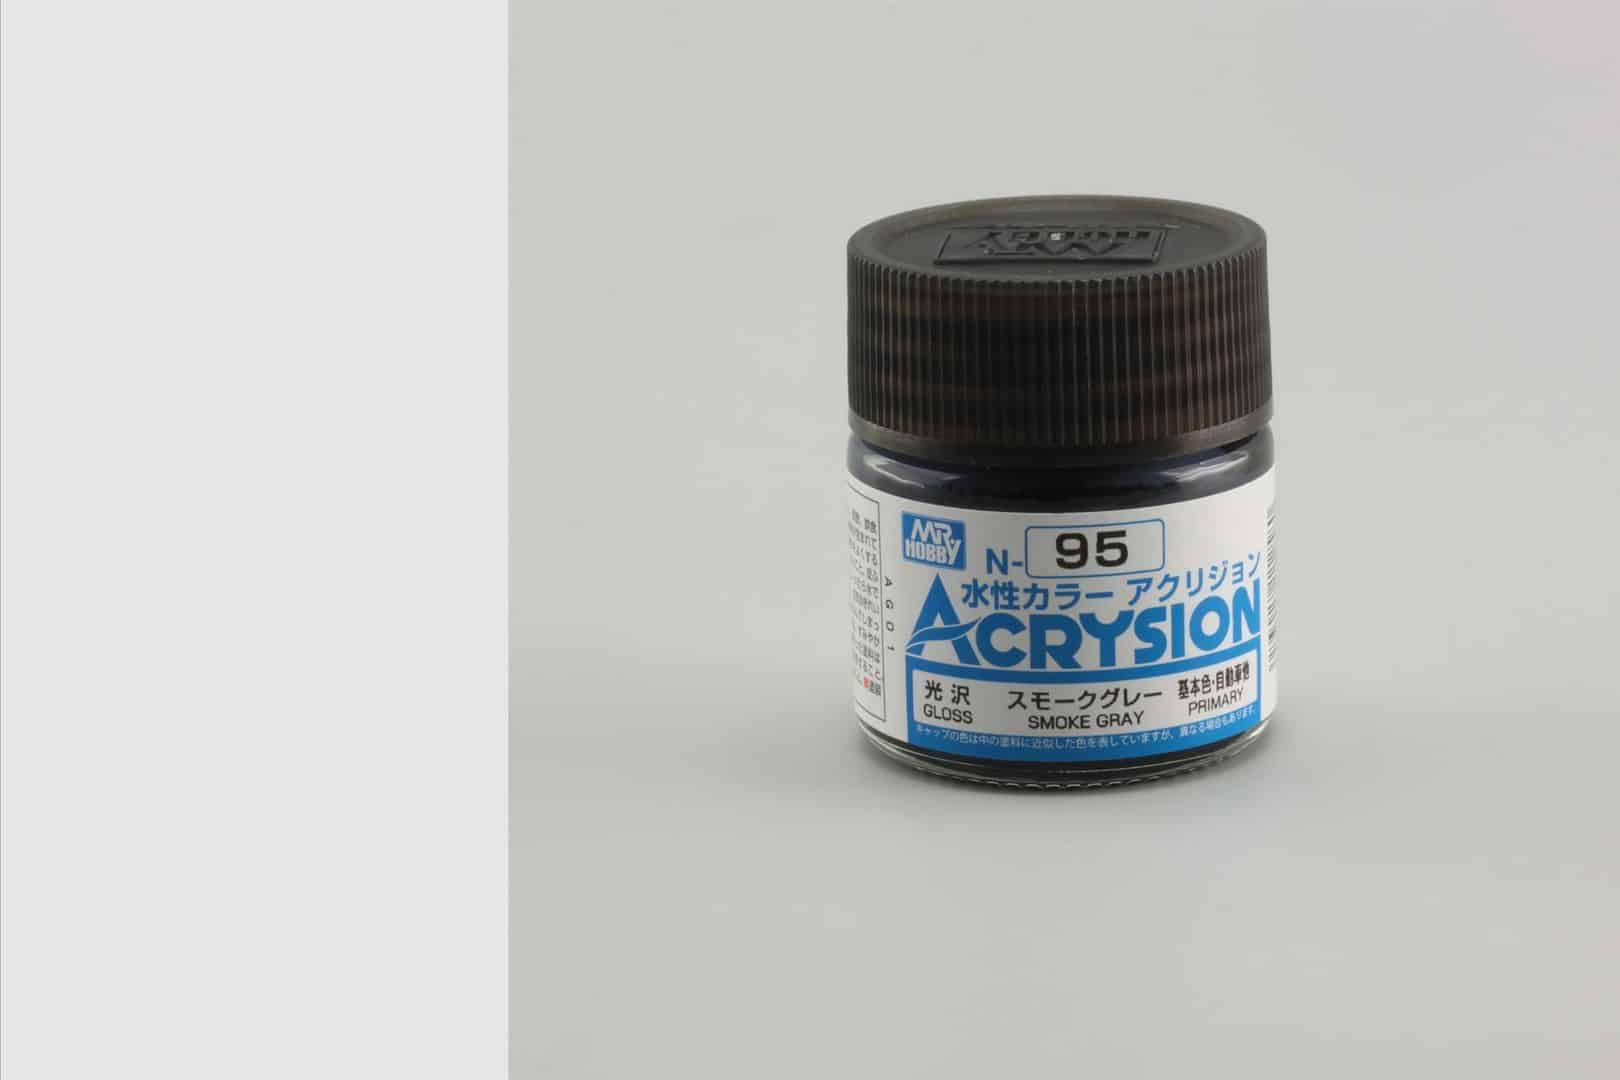 สีสูตรน้ำ Acrysion N95 smoke gray